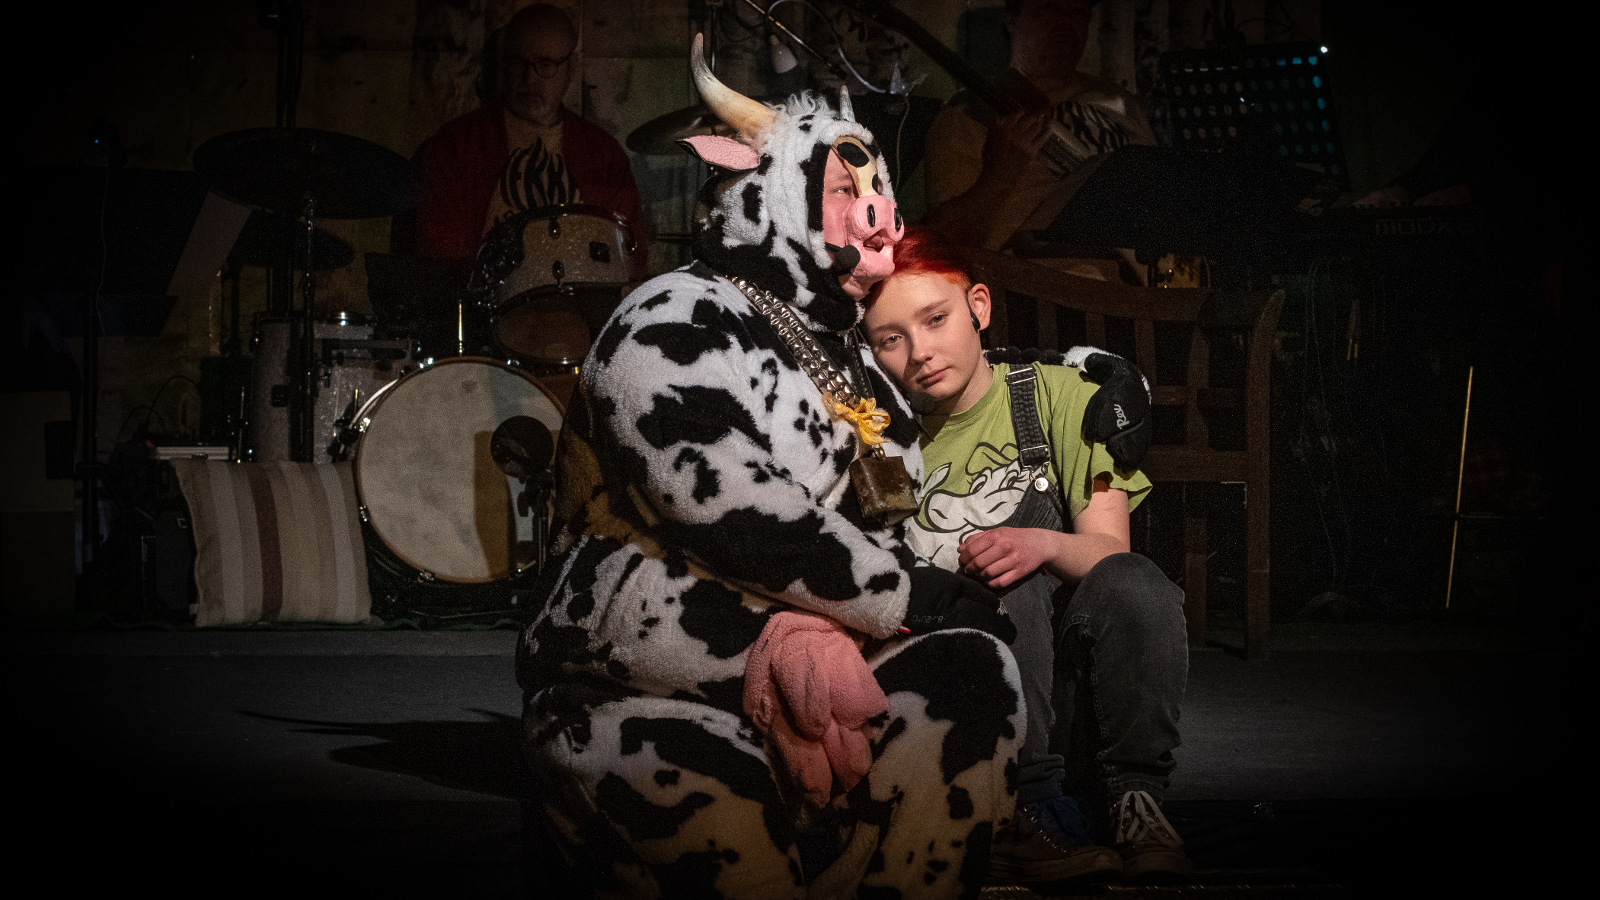 Kuvassa on istumassa musta-valkoisessa lehmäasussa oleva näyttelijä ja häneen nojaa nuori tyttö vihreässä paidassa. Tausta on tumm ja valaistus kohdestuu heihin.